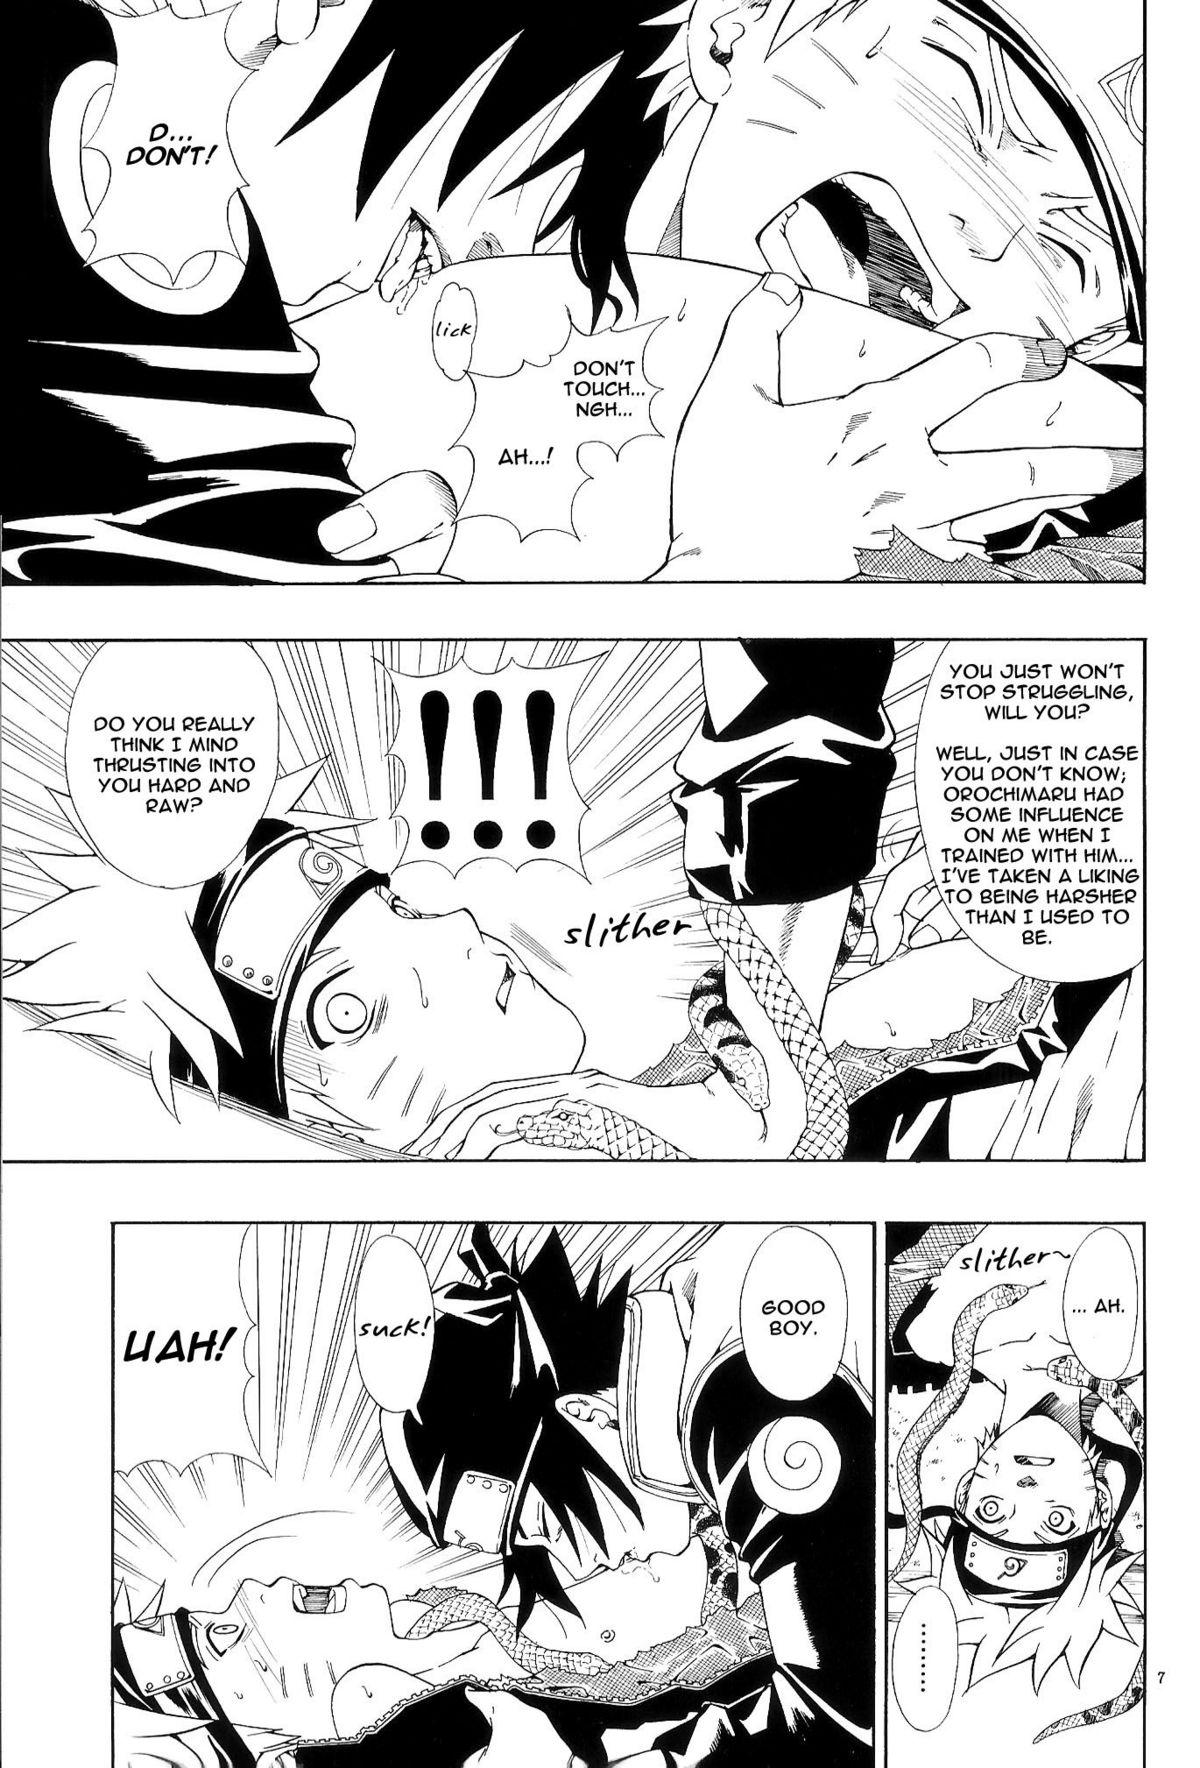 Cdzinha ERO ERO²: Volume 1.5 (NARUTO) [Sasuke X Naruto] YAOI -ENG- - Naruto Gay Porn - Page 6